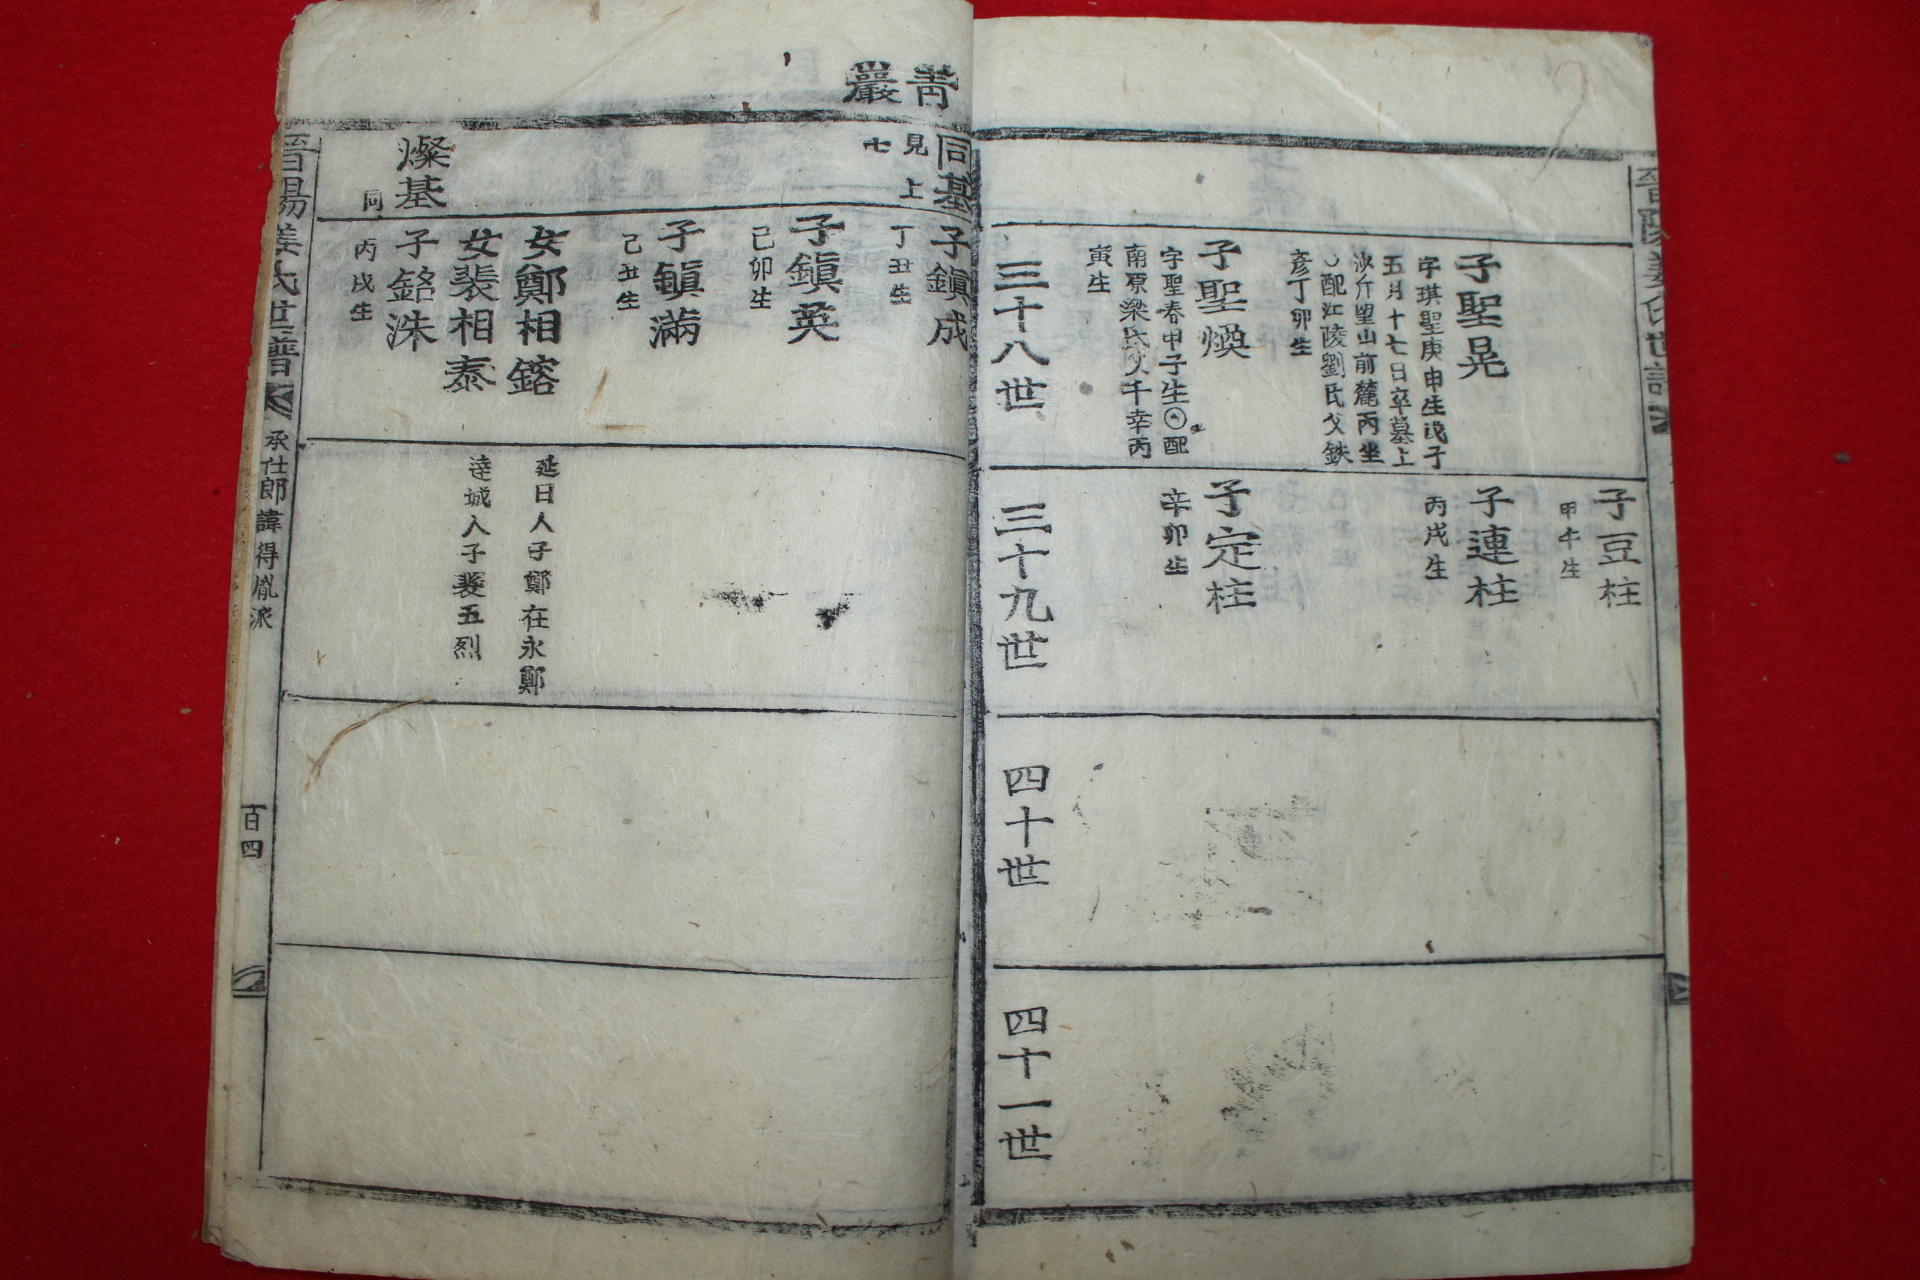 조선시대 목활자본 진양강씨세보(晉陽姜氏世譜)권3  1책